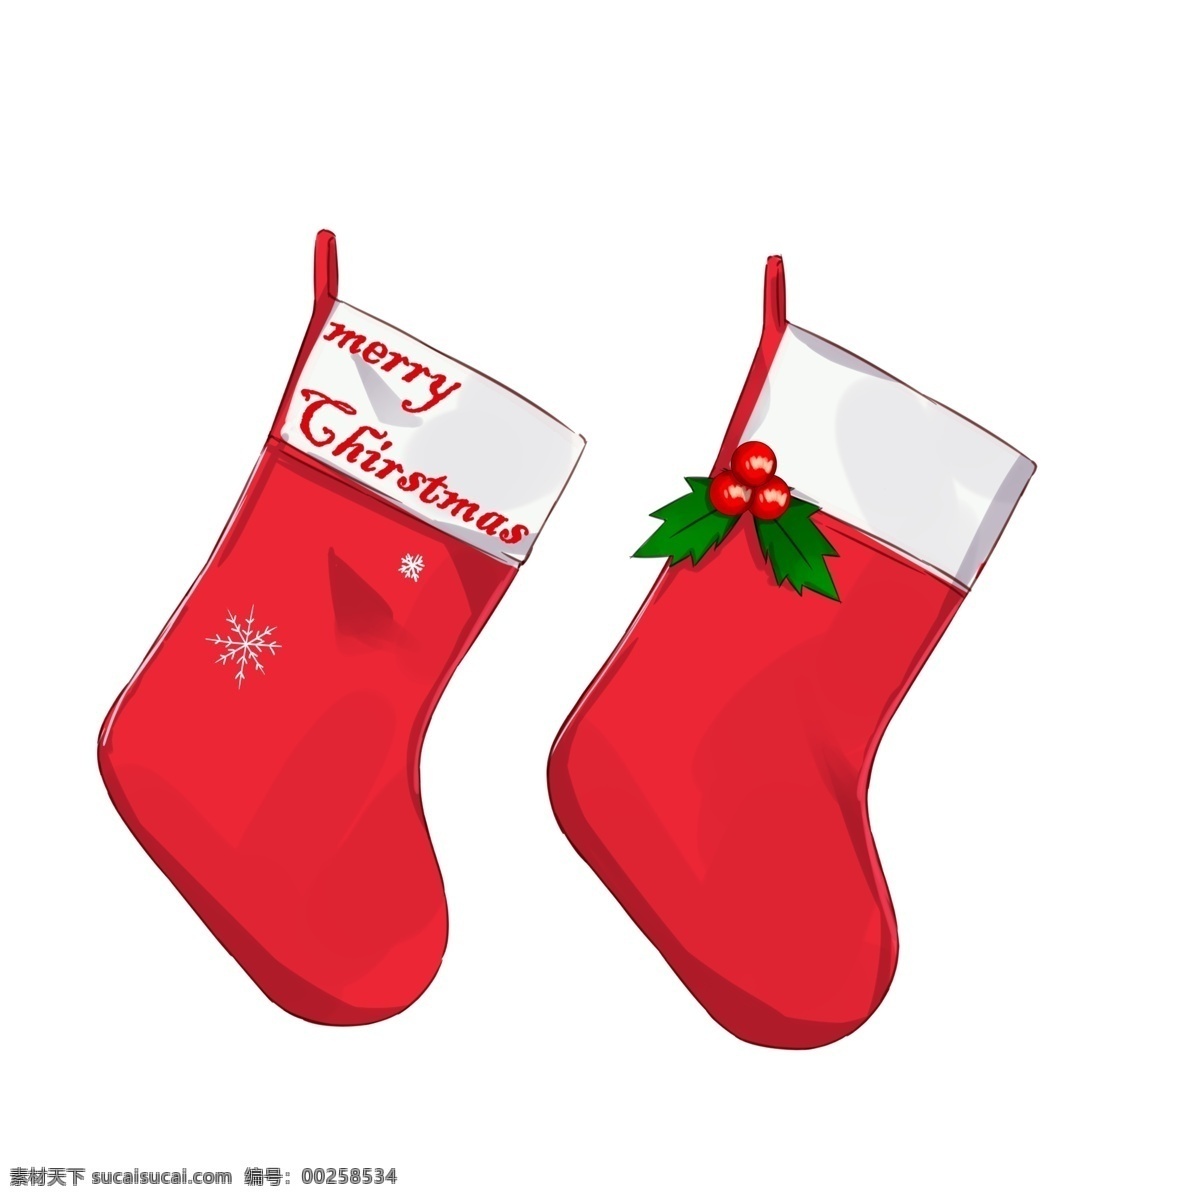 手绘 卡通 小 物 圣诞 袜 袜子 圣诞袜子 圣诞袜 装礼物 卡通圣诞袜 圣诞袜小物 圣诞袜手绘 圣诞袜插画 插图圣诞袜 圣诞袜配图